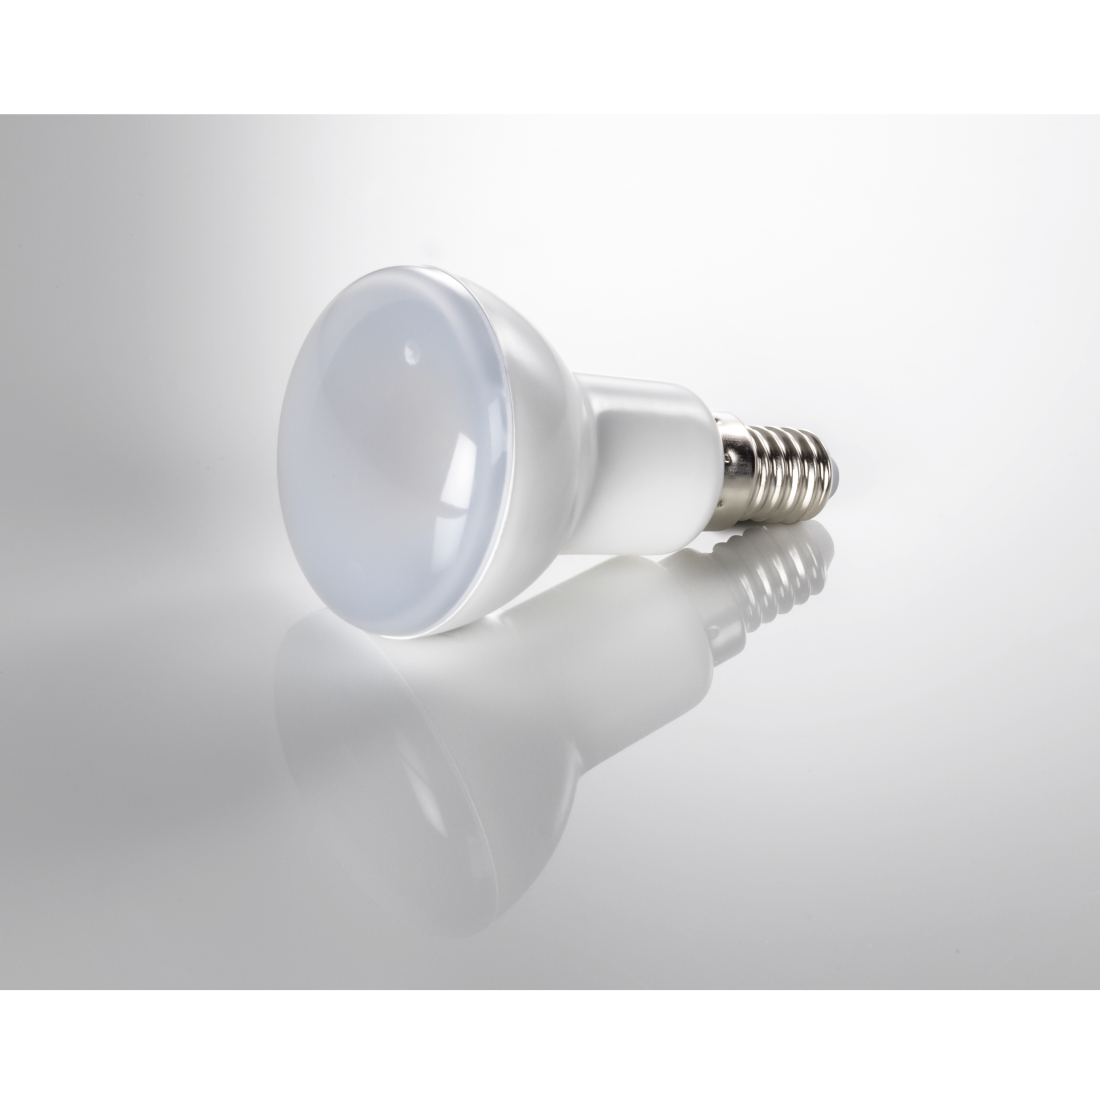 abx3 High-Res Image 3 - Xavax, Ampoule LED, E14, 450lm remp. 39W, amp. réfl. R50, bl. chd., 2 p.